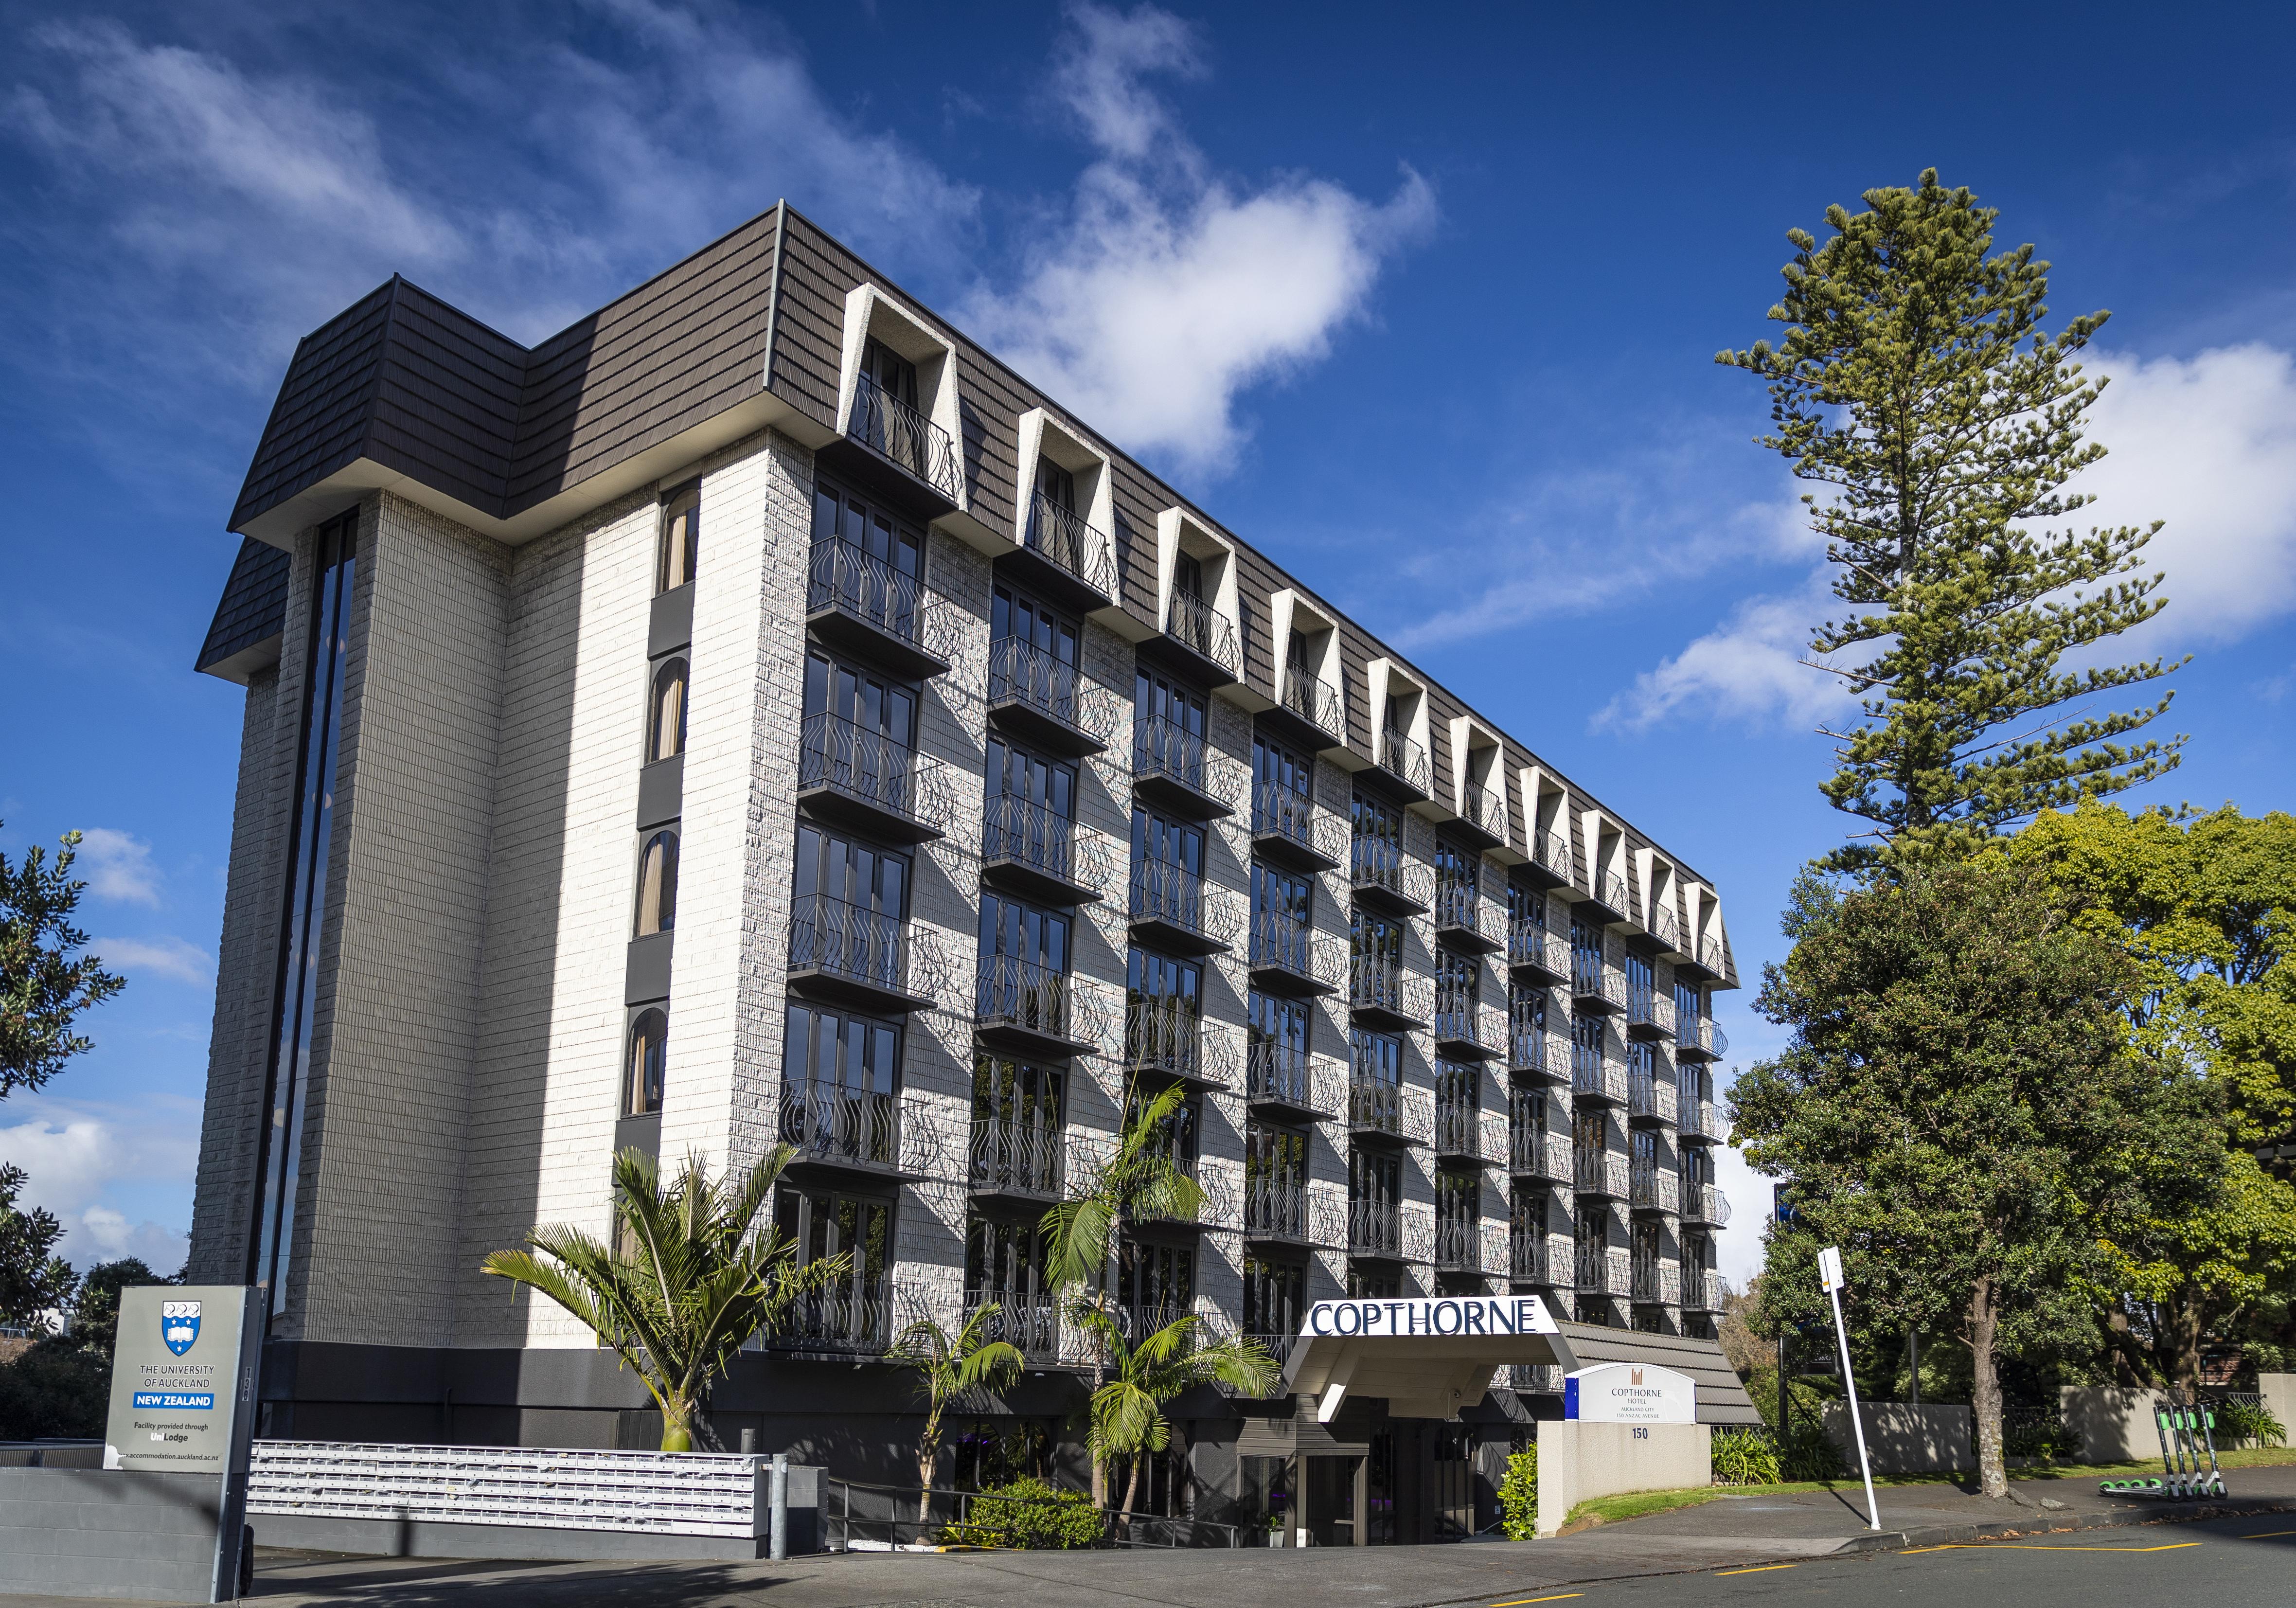 Copthorne Hotel Auckland City Extérieur photo